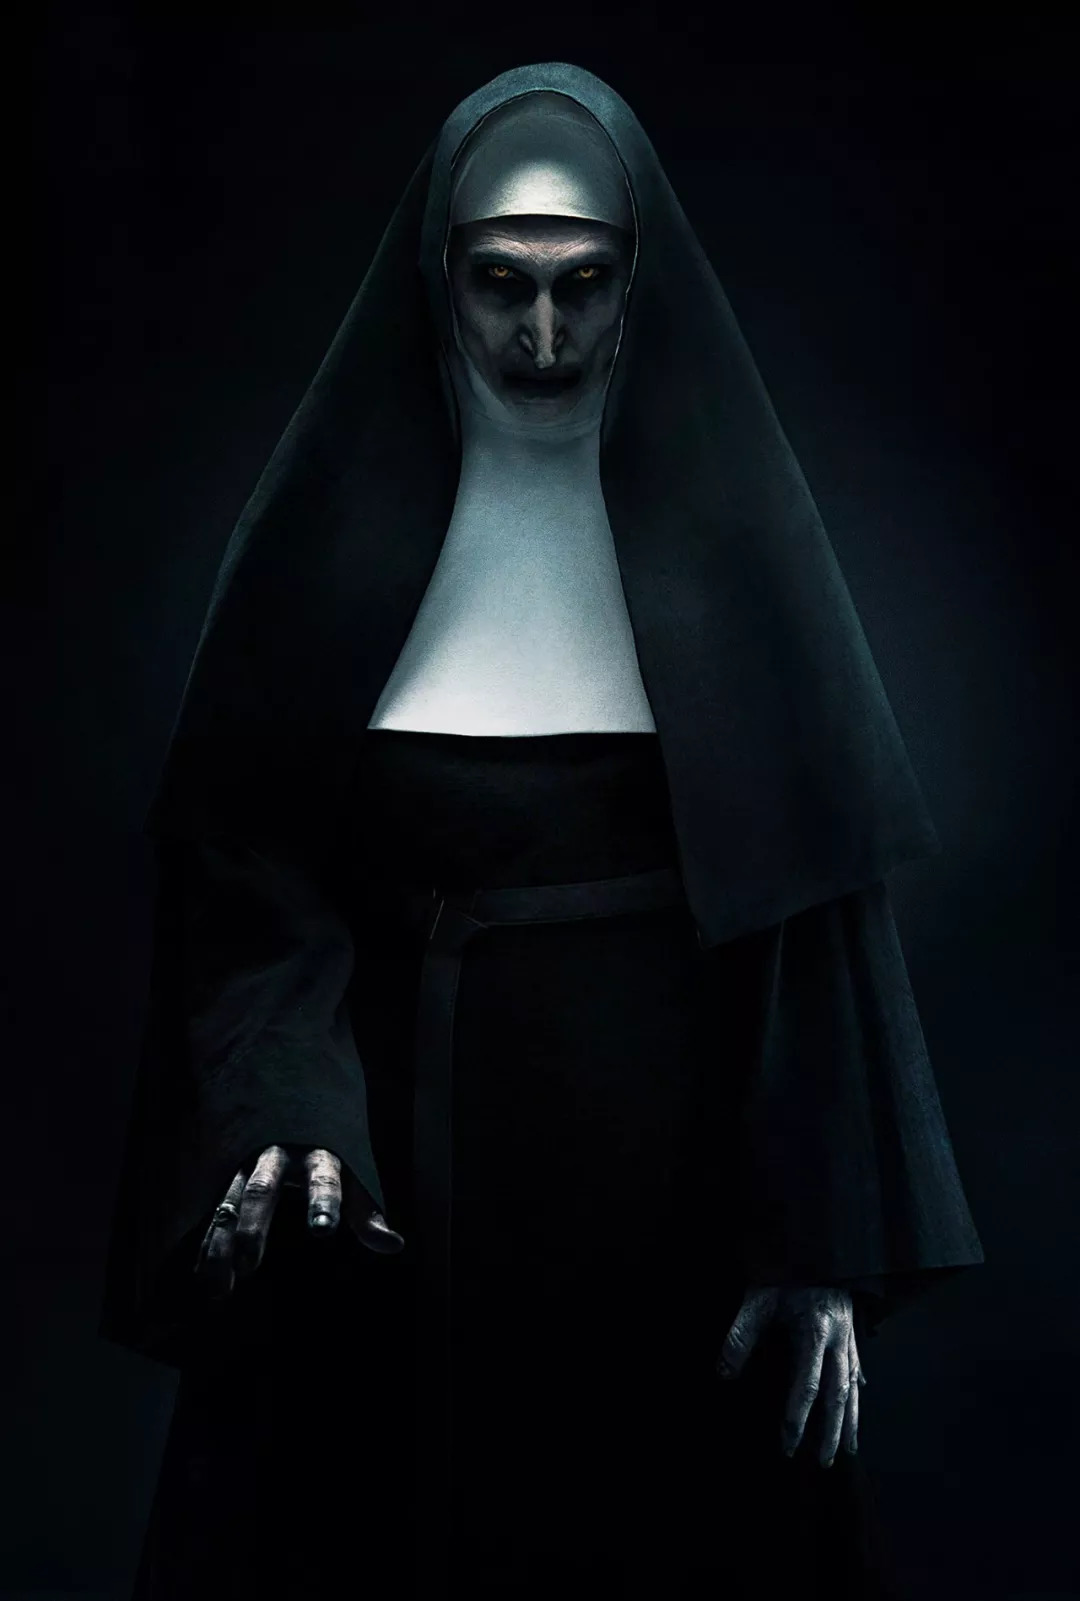 艾琳修女在镜中见到鬼修女,以及鬼修女正式现身时的场景,都恐怖效果